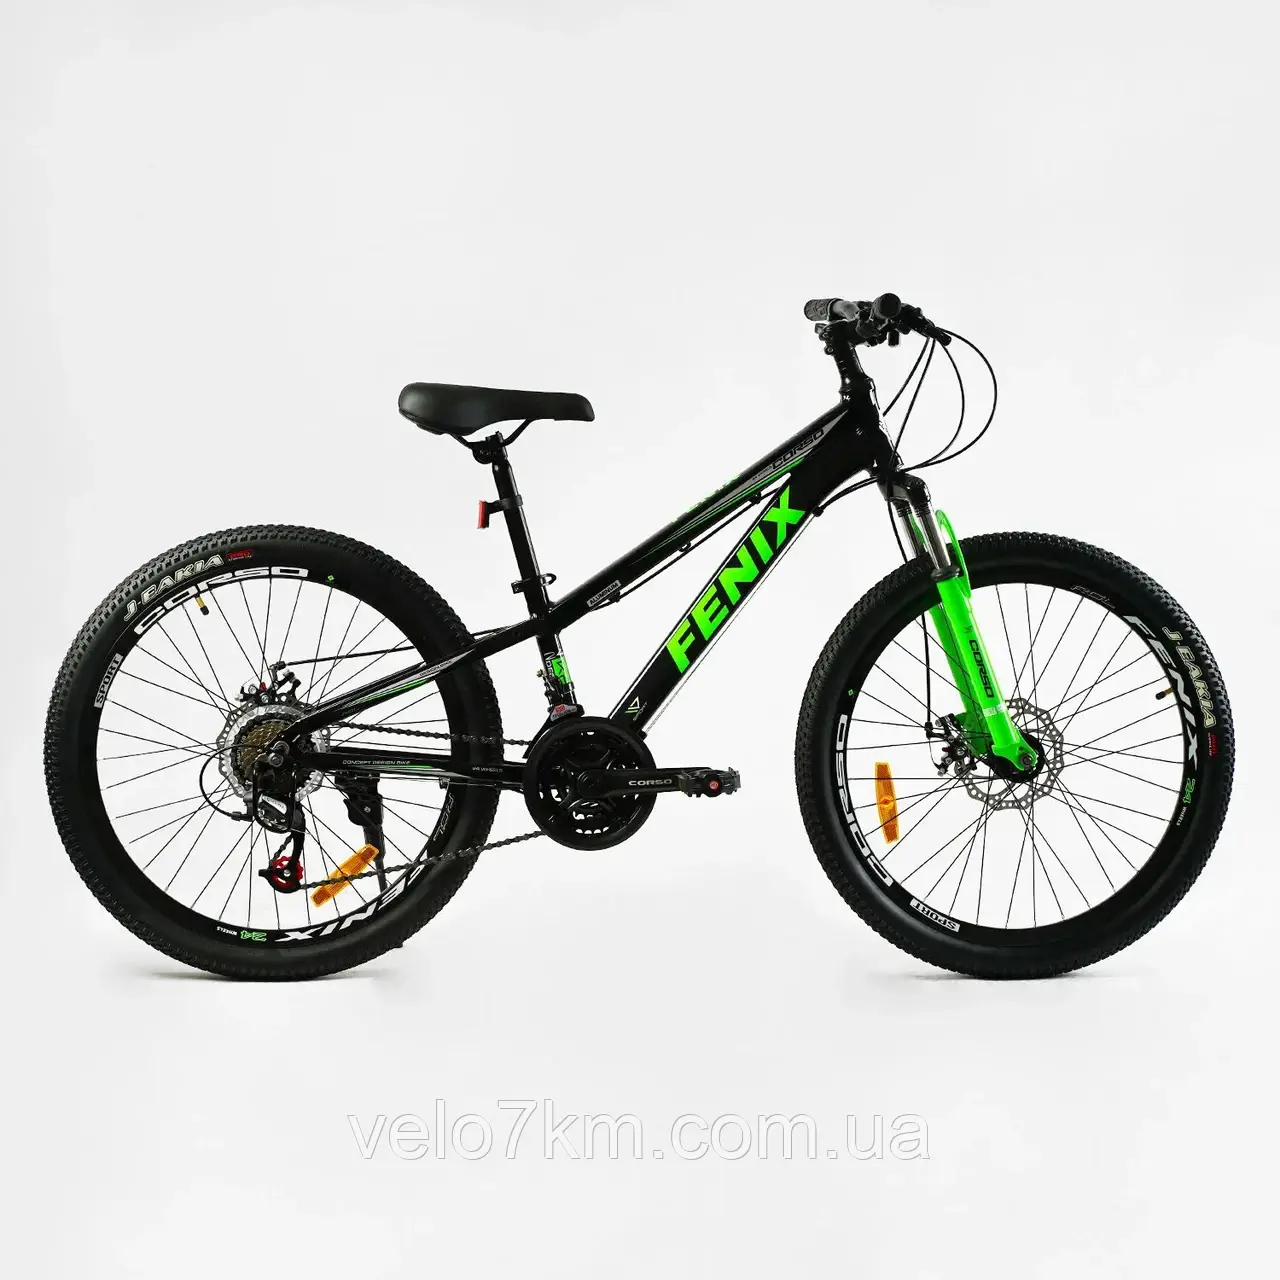 Велосипед спортивний Corso 24" дюйми «Fenix» рама алюмінієва 11’’, обладнання Saiguan 21 швидкість, зібран на 75%